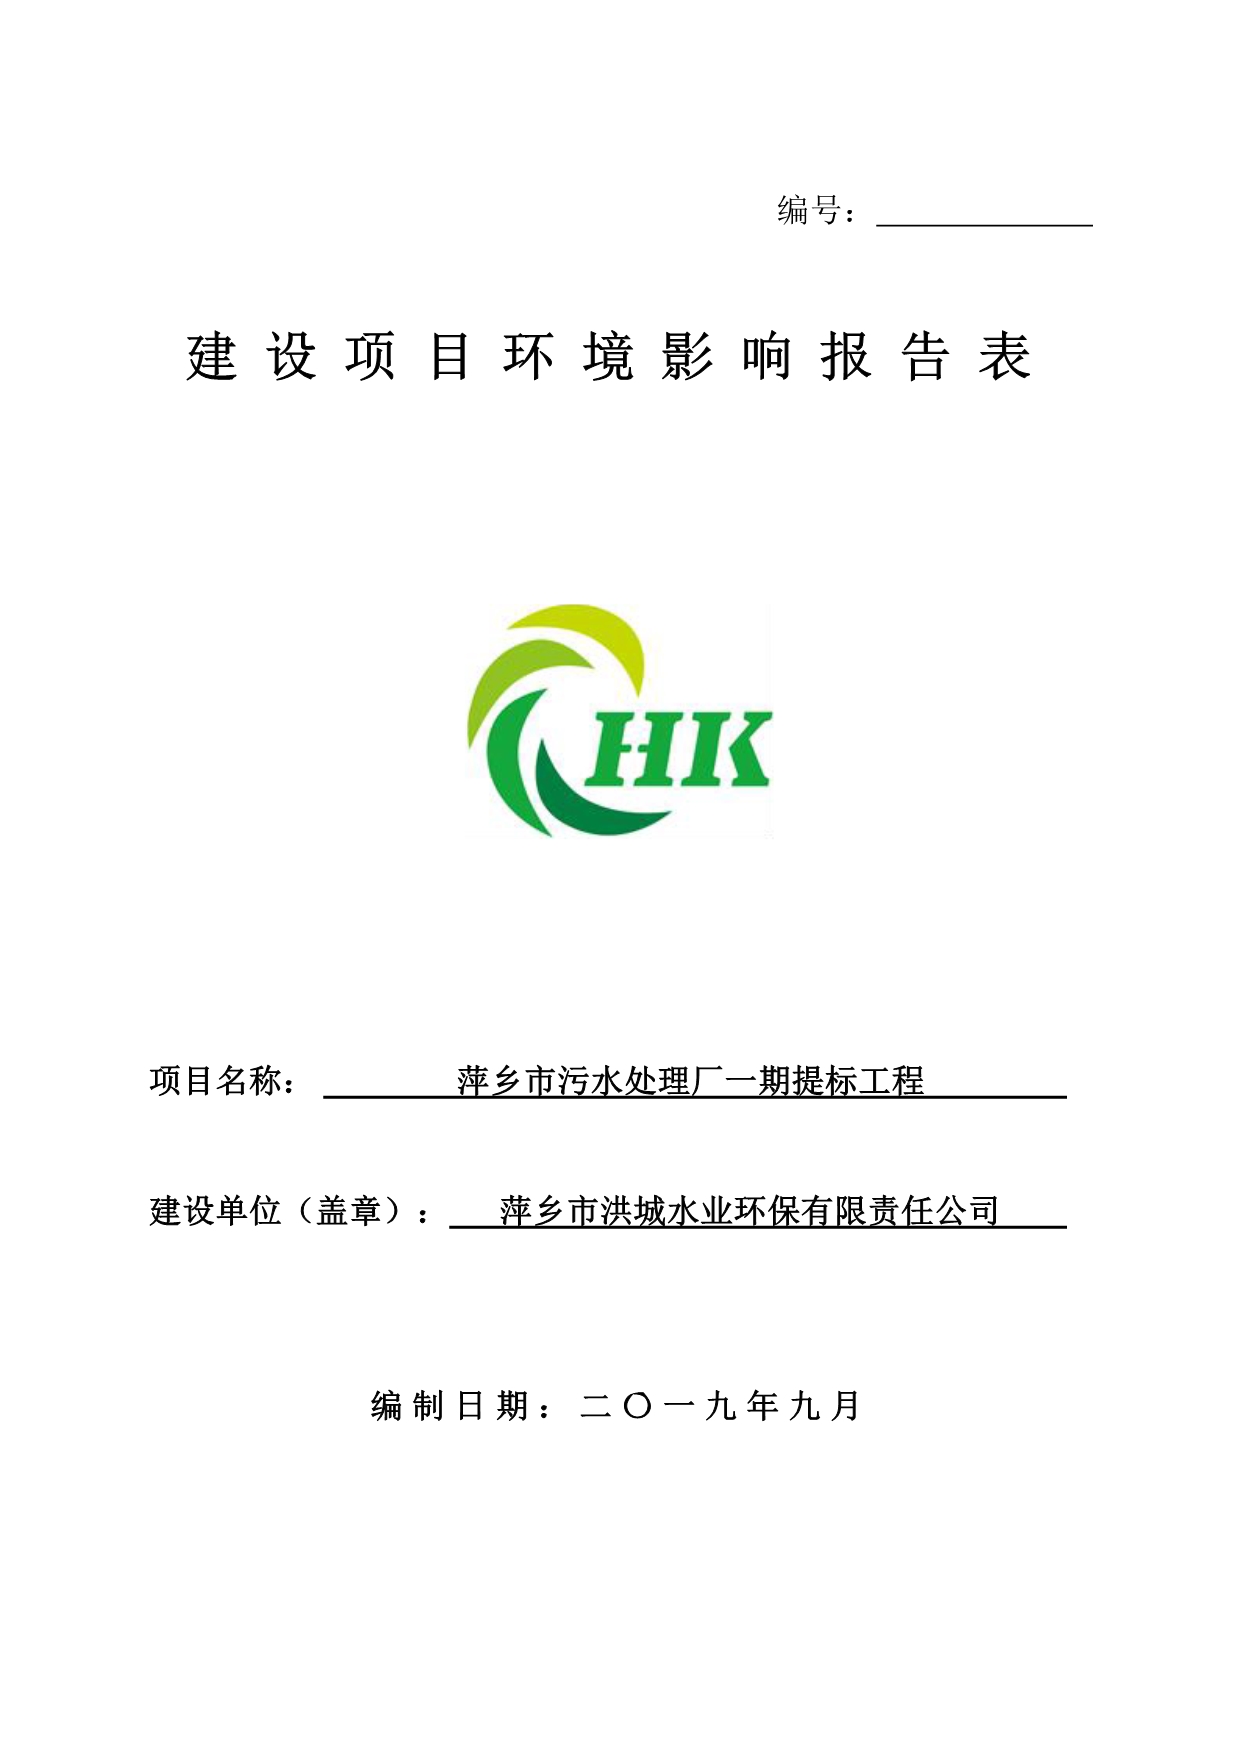 萍乡市污水处理厂一期提标工程项目环境影响评价报告书_第1页